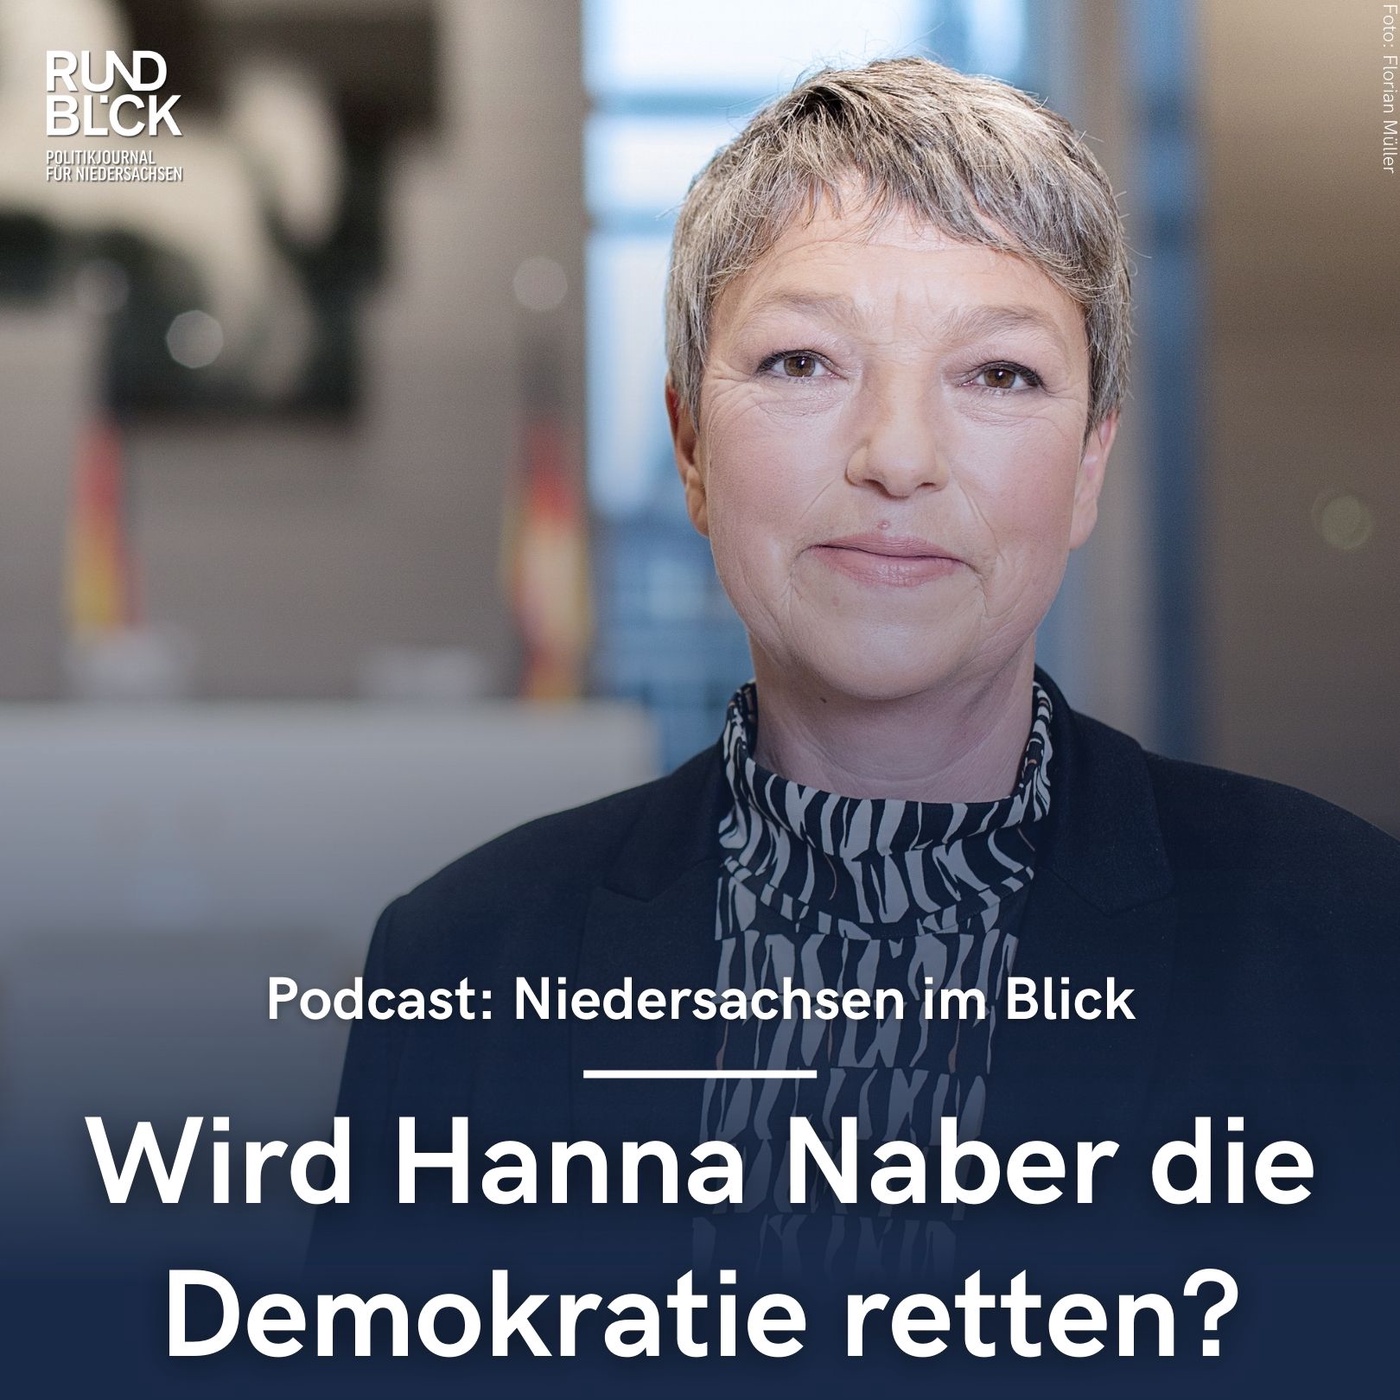 Wird Hanna Naber die Demokratie retten?